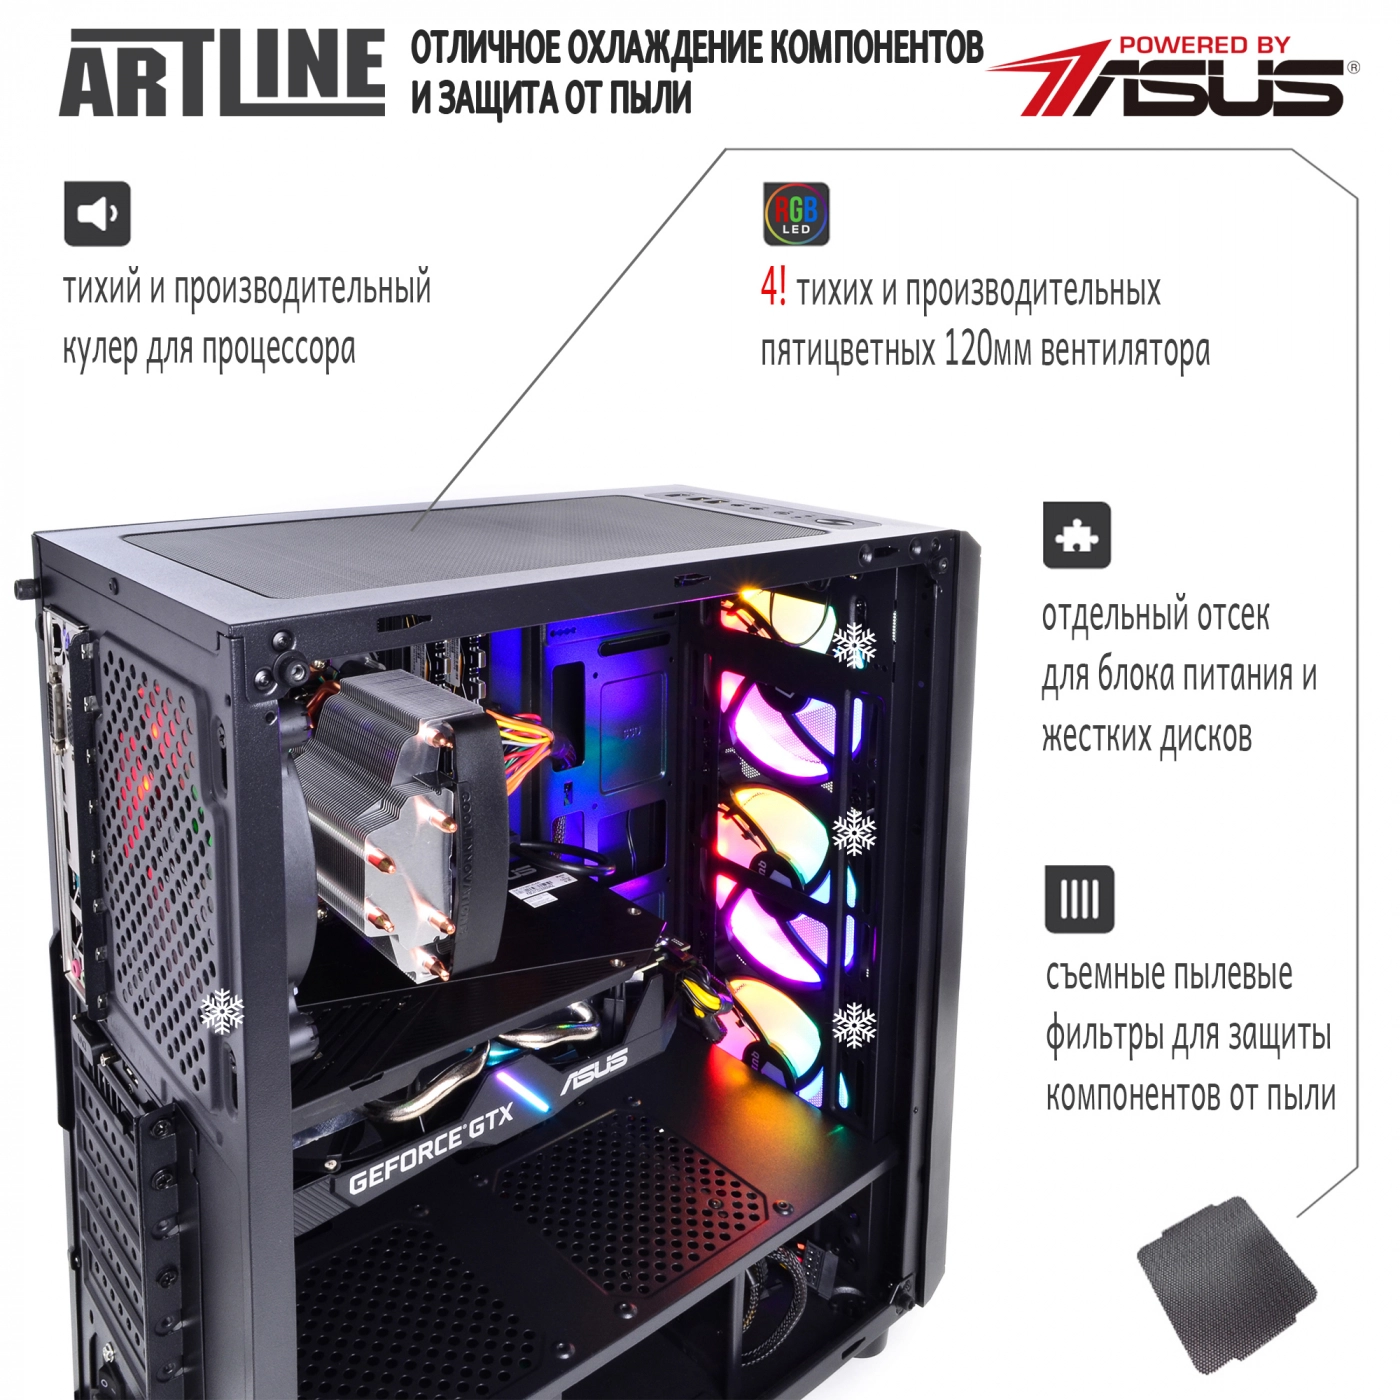 Купить Компьютер ARTLINE Gaming X51v14 - фото 3